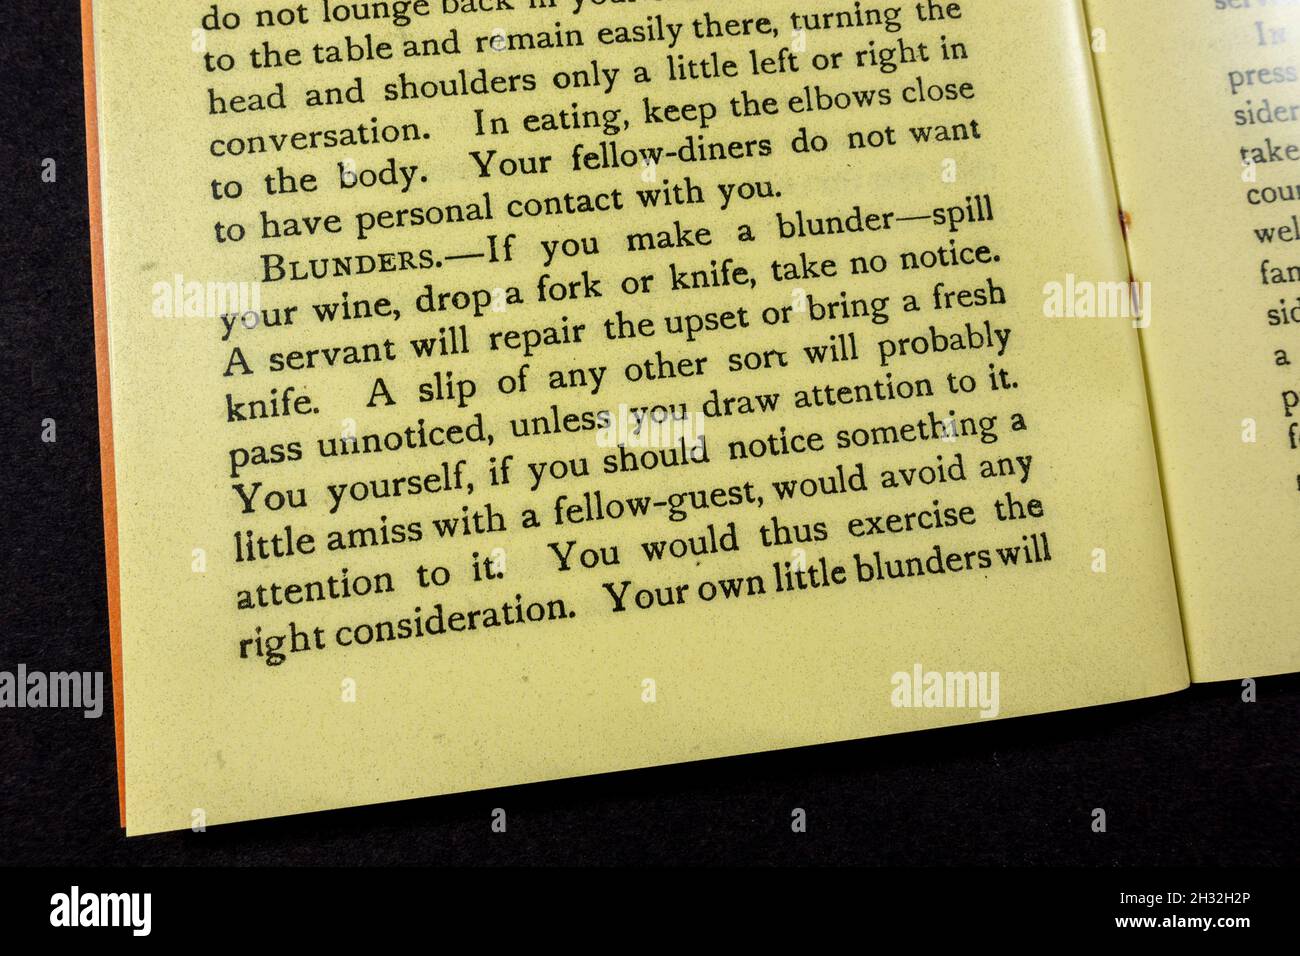 'Blunders' en el capítulo 'Modales en el hogar y en la mesa', folleto 'Etiquette in Everyday Life' de 1920 (réplica). Foto de stock